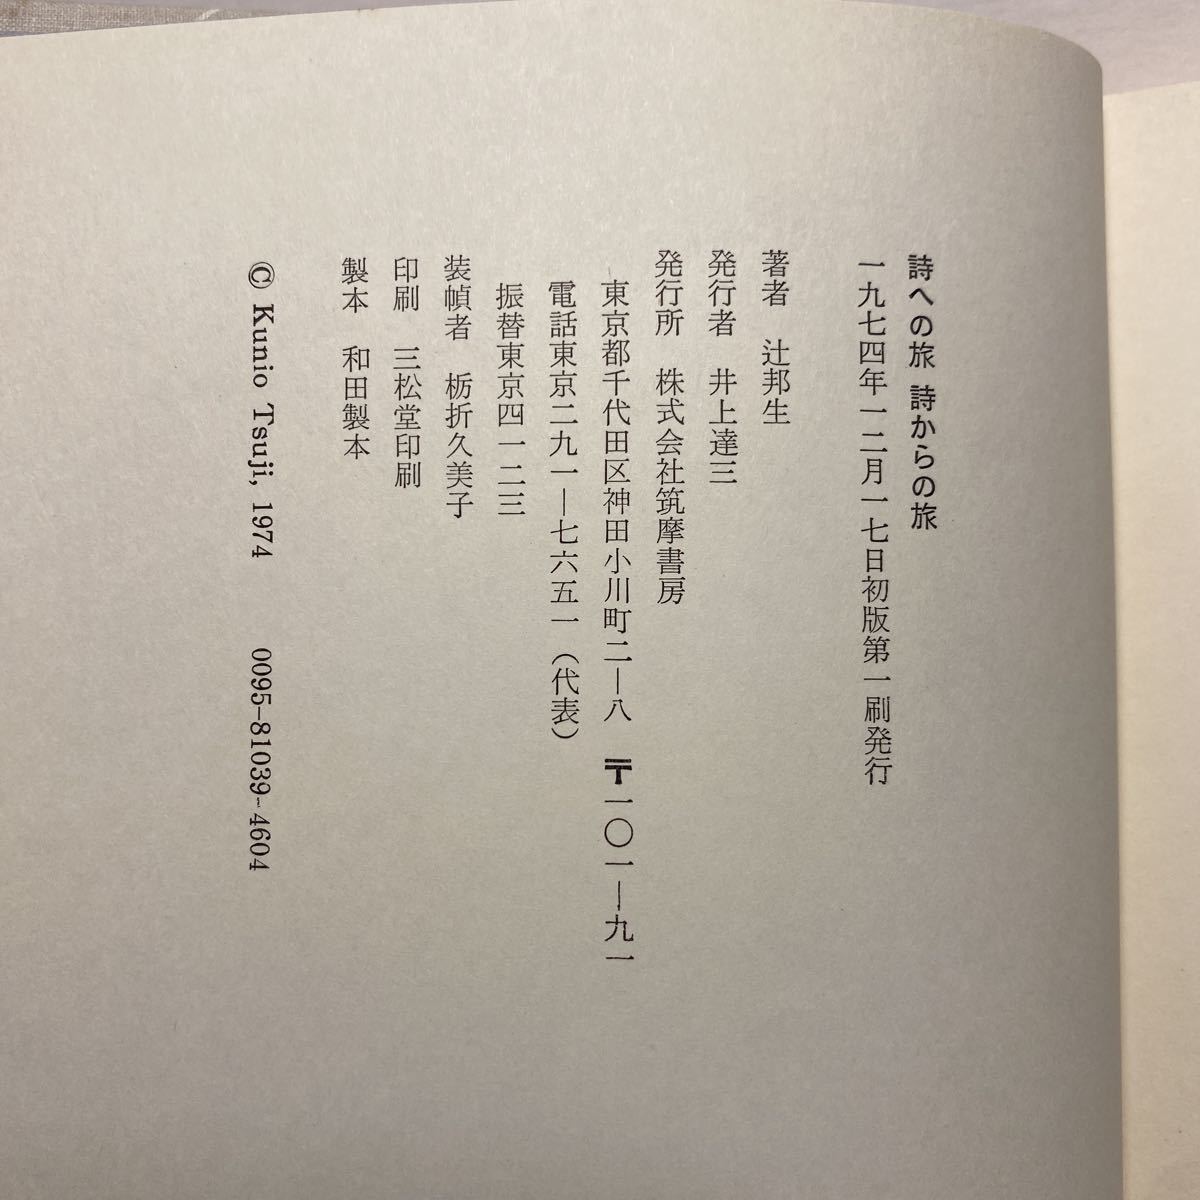 i7/ поэзия к . поэзия c . Tsuji Kunio .. книжный магазин 1974 год первая версия стоимость доставки 180 иен ( Yu-Mail )③